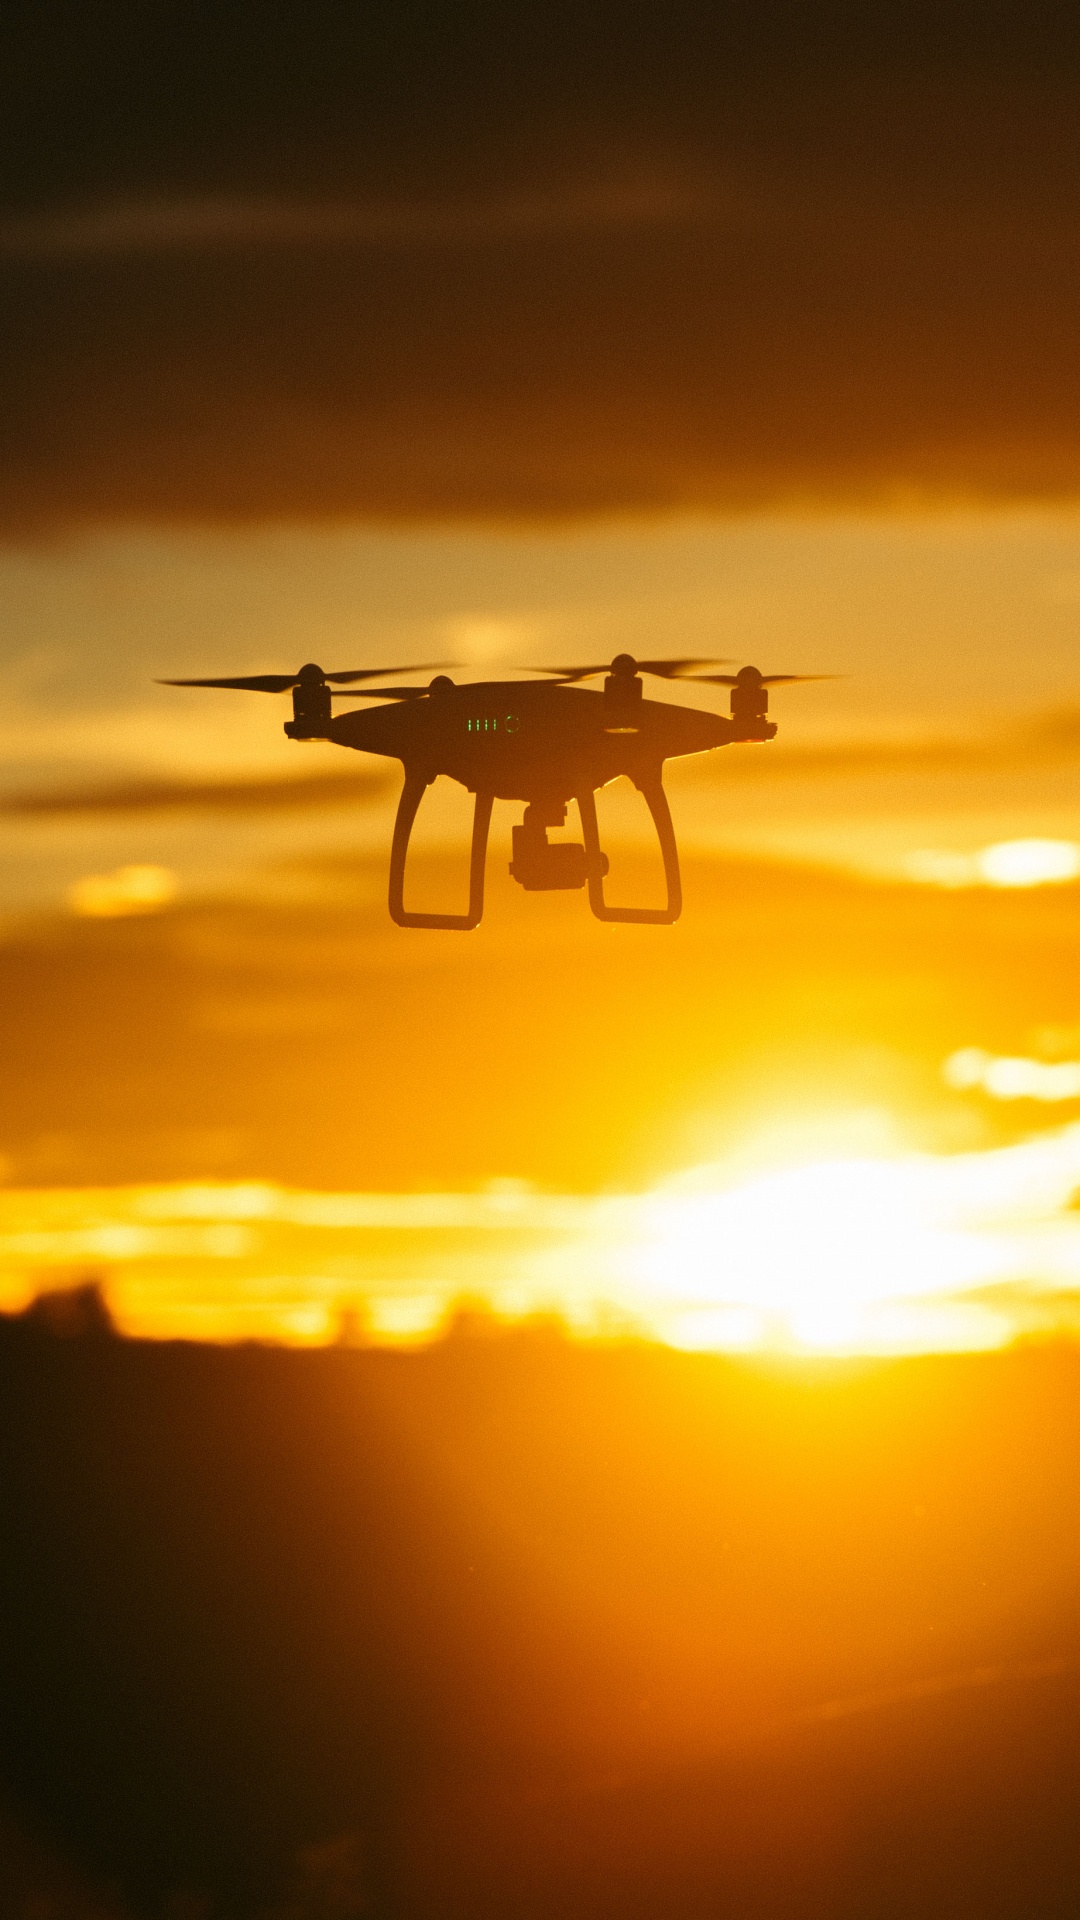 Drone Blanco Volando Durante la Puesta de Sol. Wallpaper in 1080x1920 Resolution